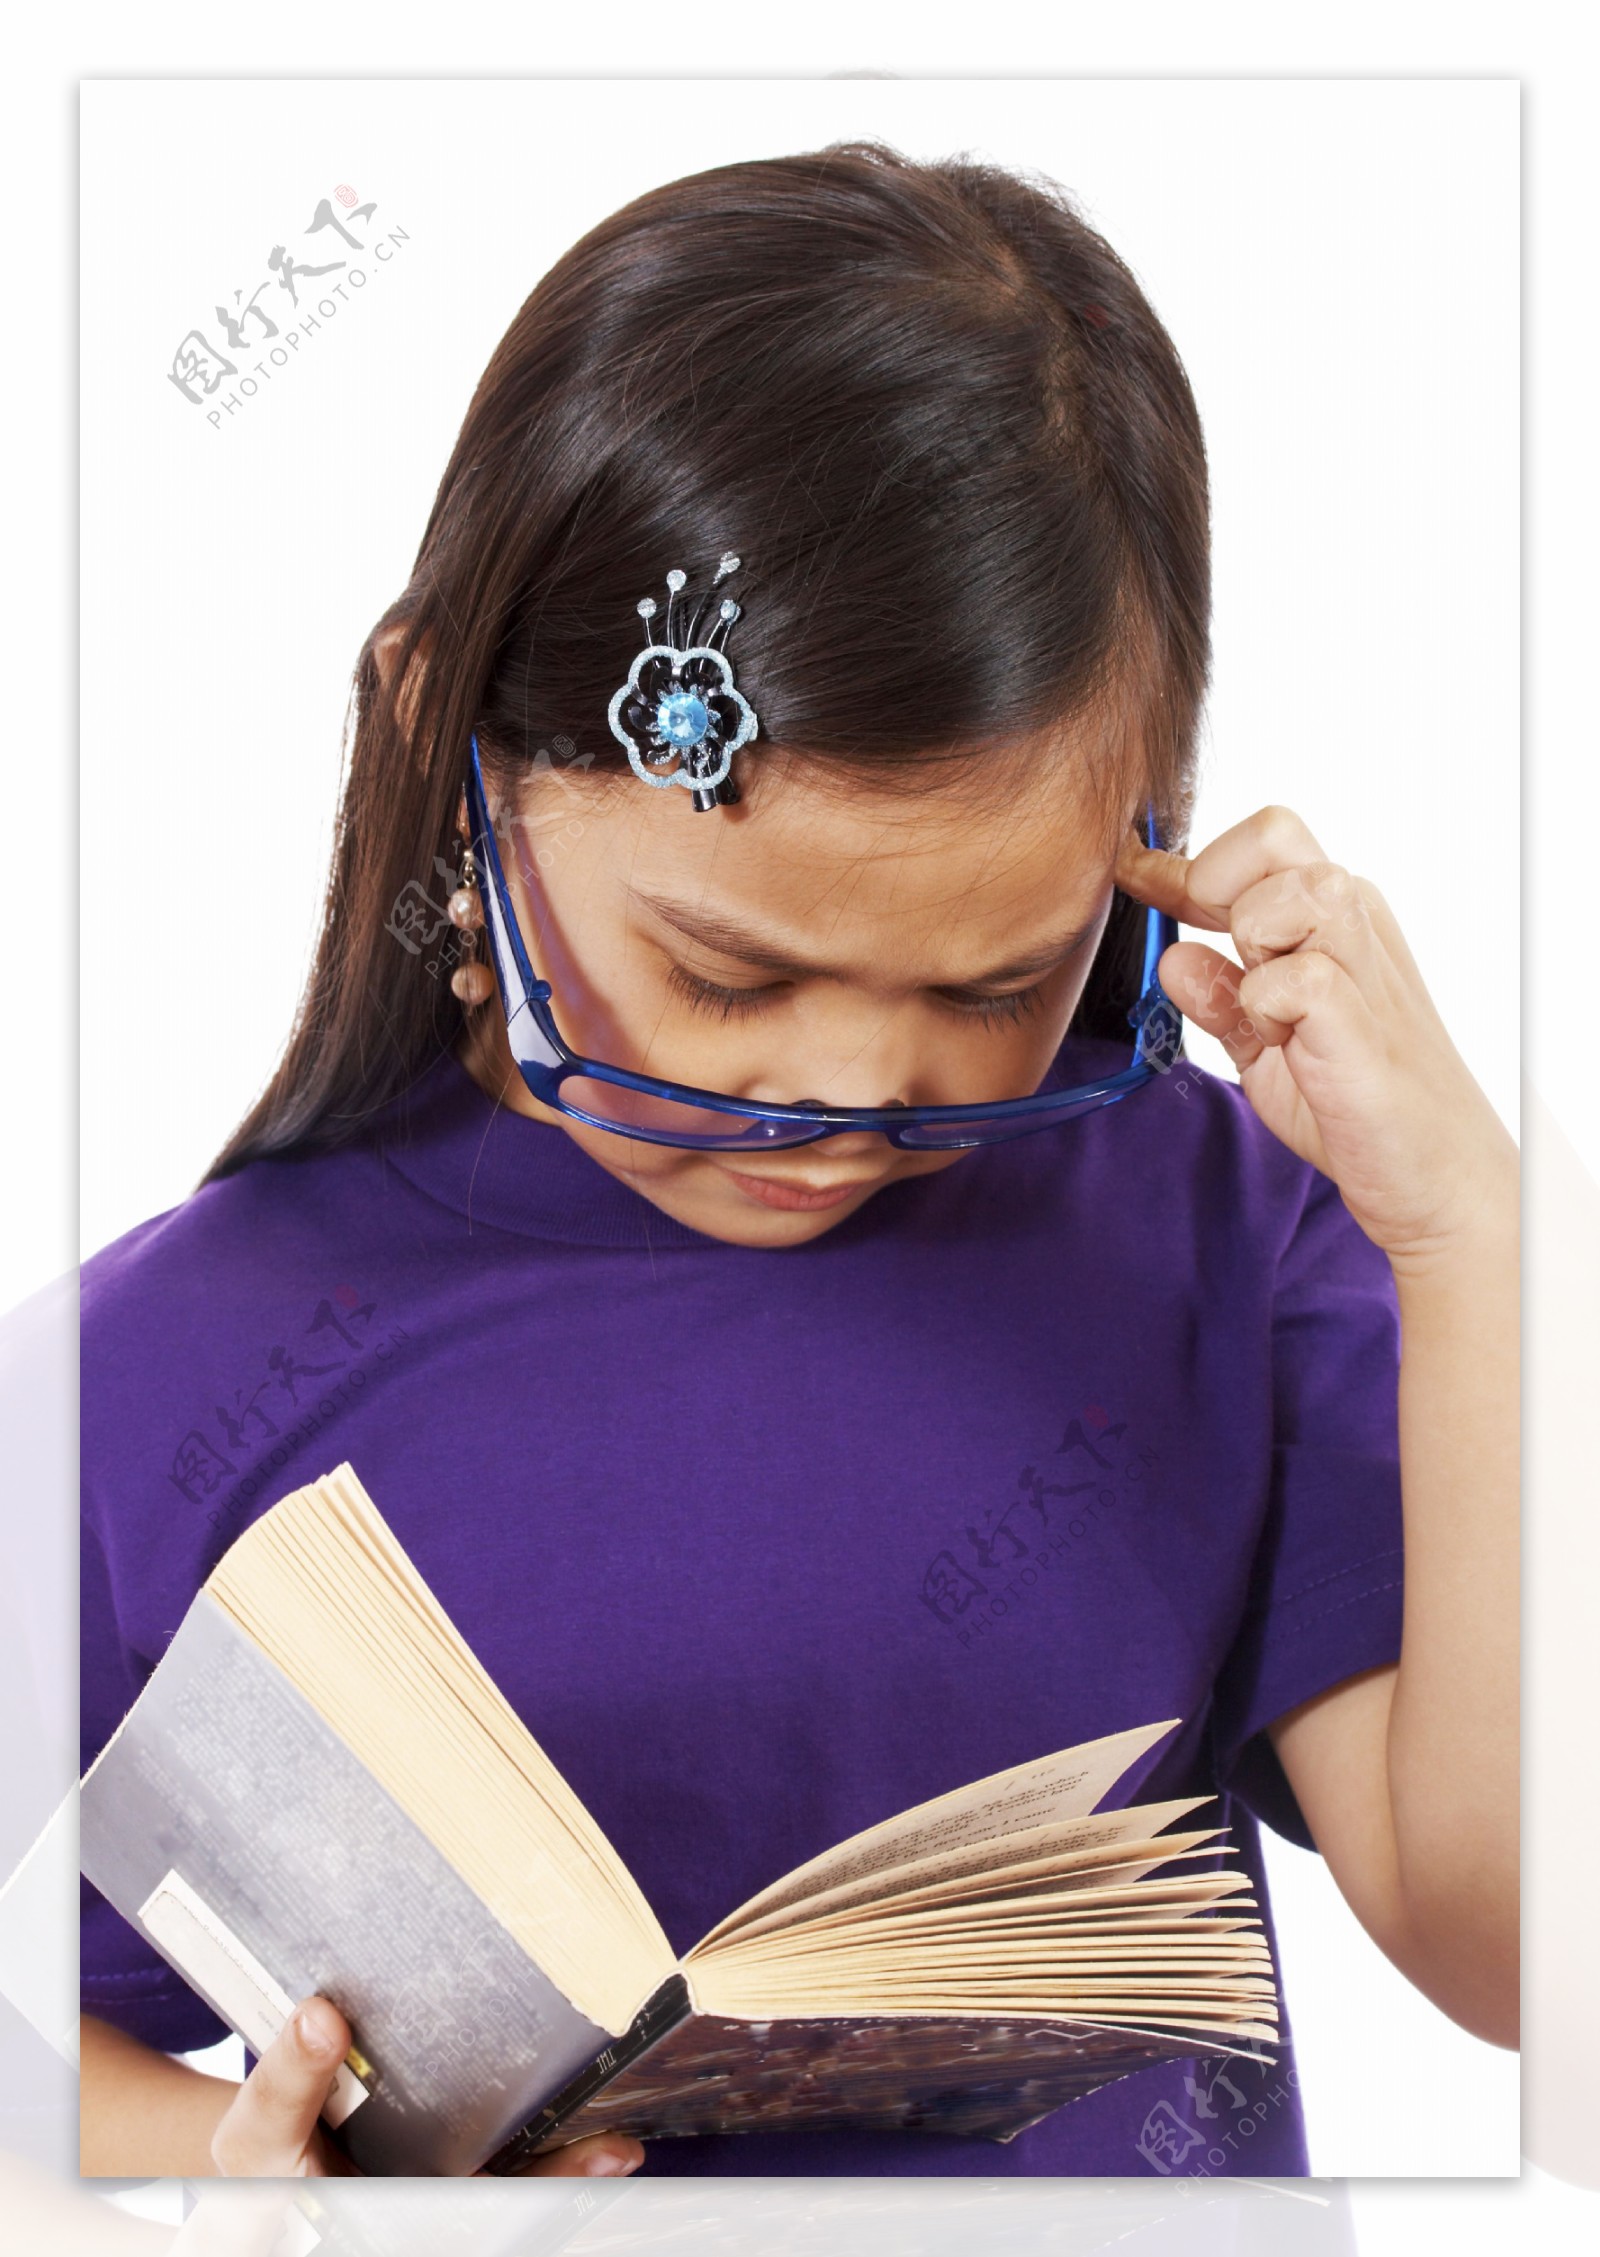 年轻女孩的阅读和思考